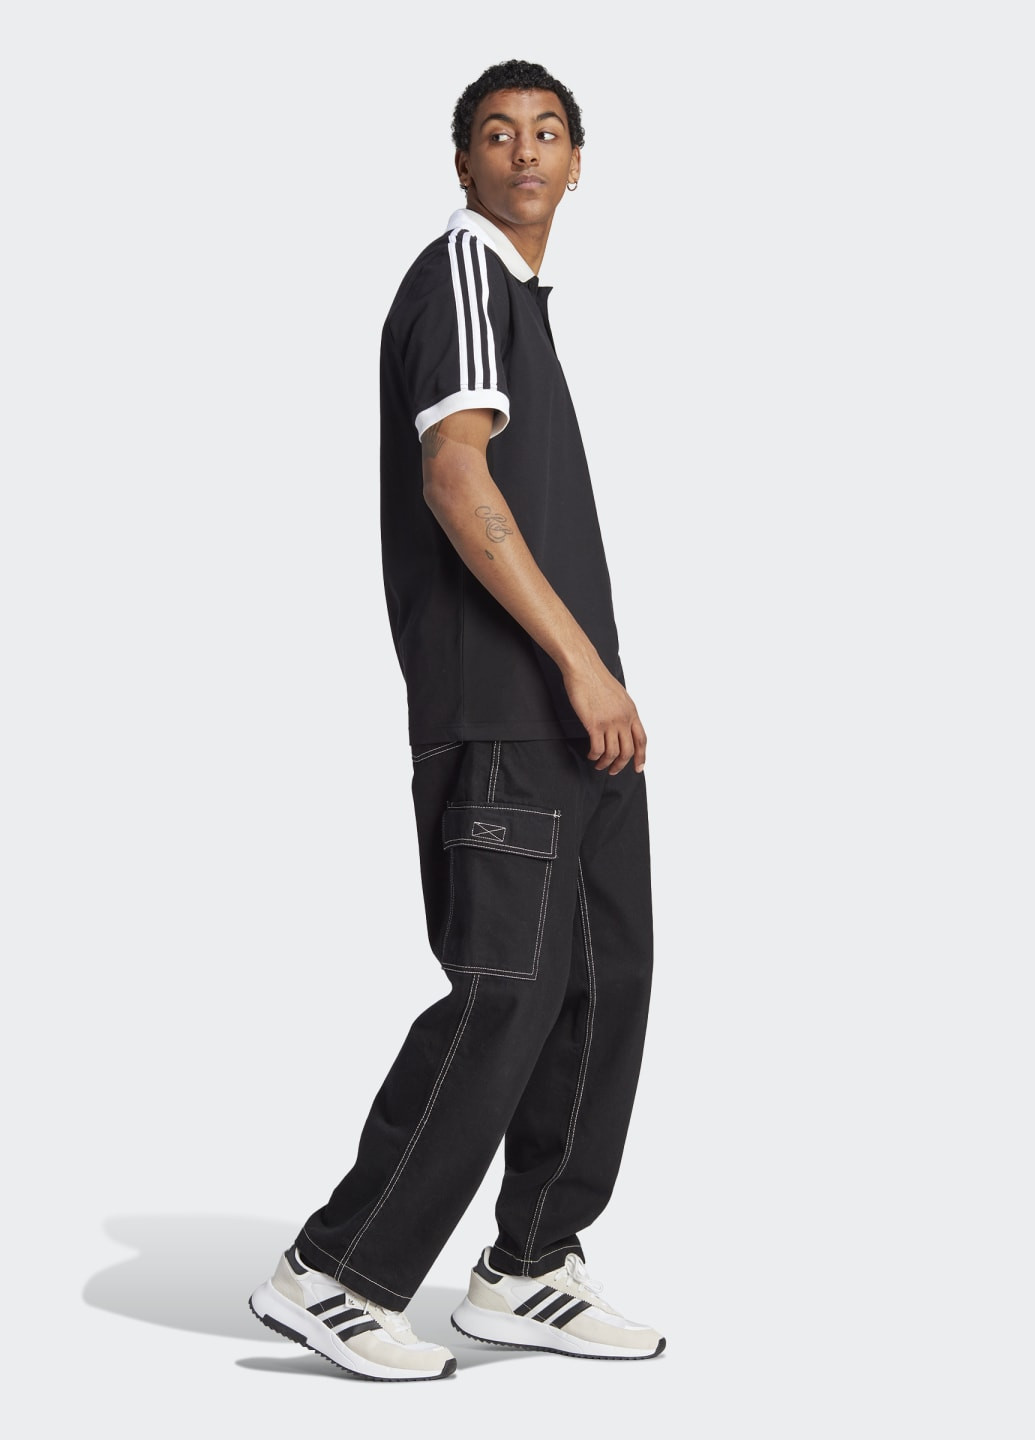 Черная футболка-поло adicolor classics 3-stripes adidas